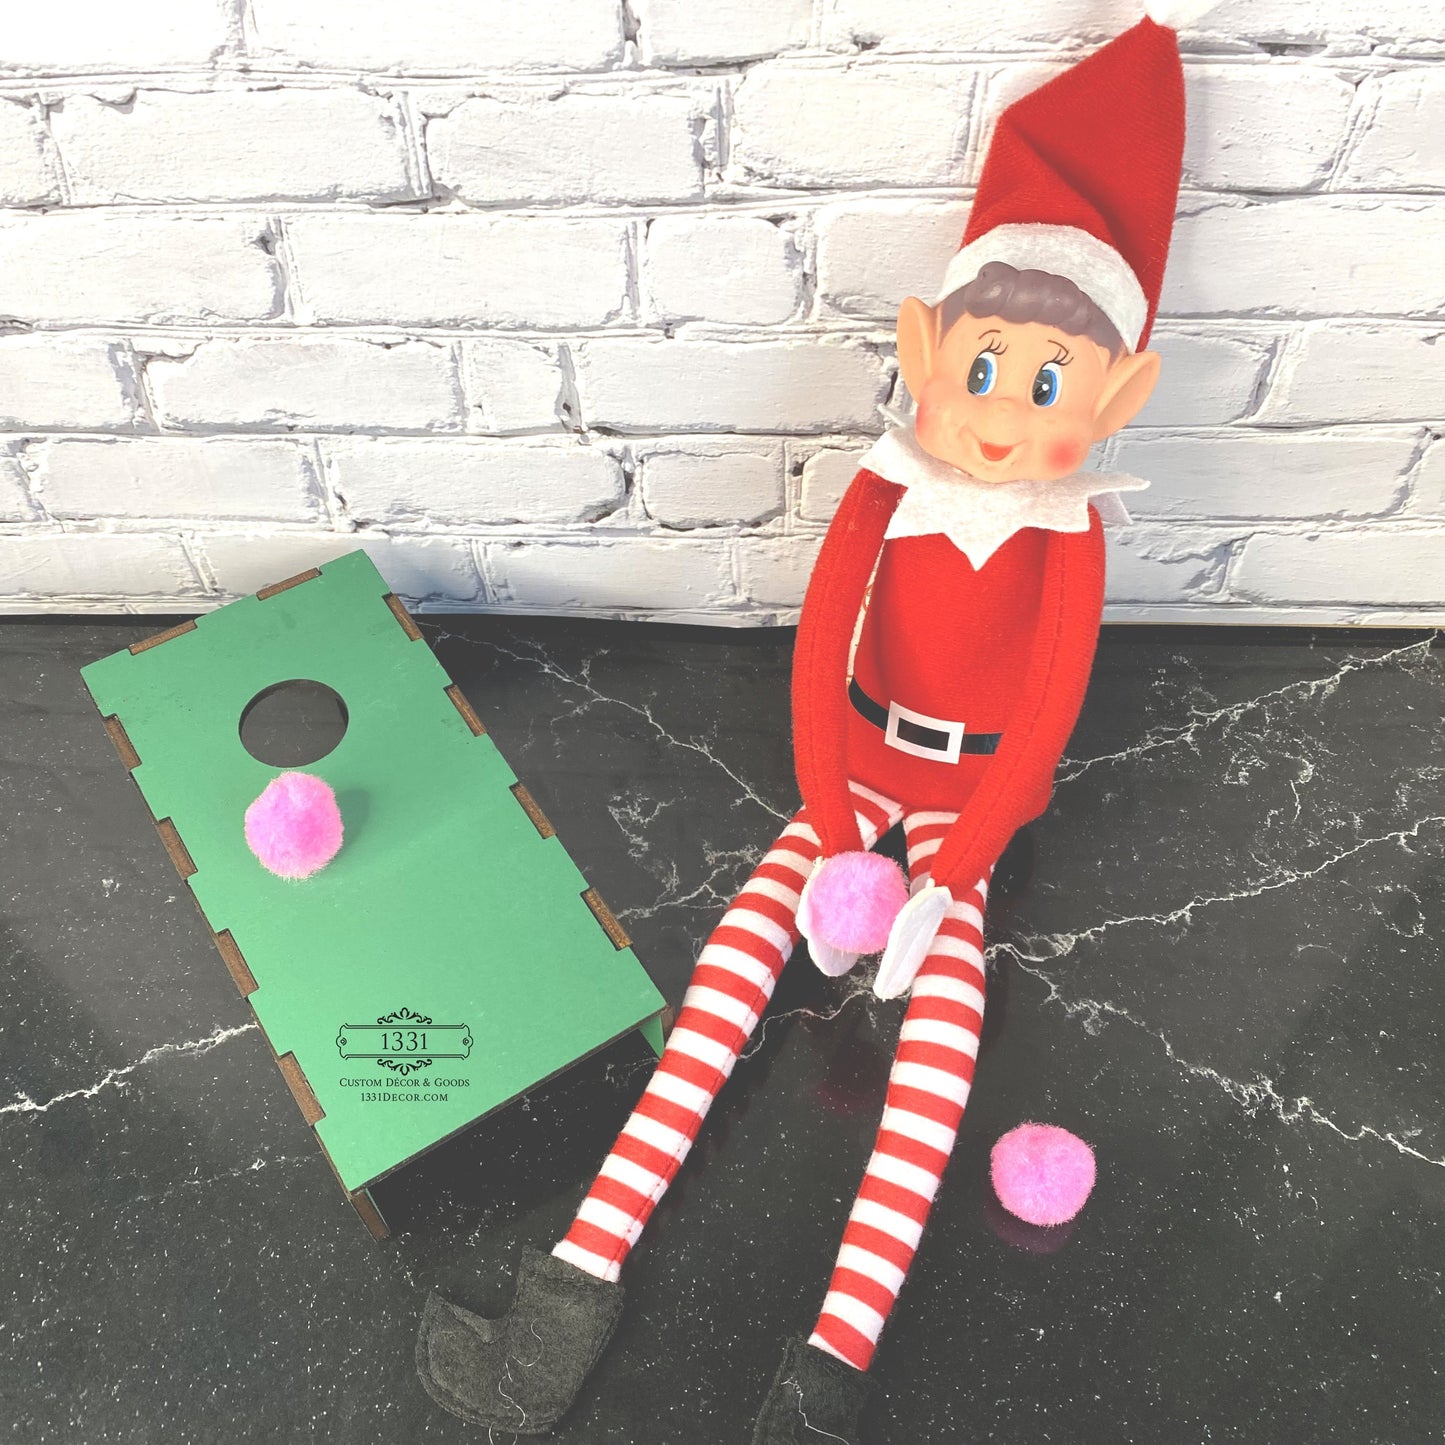 Christmas Elf Kit: Reindeer Poop